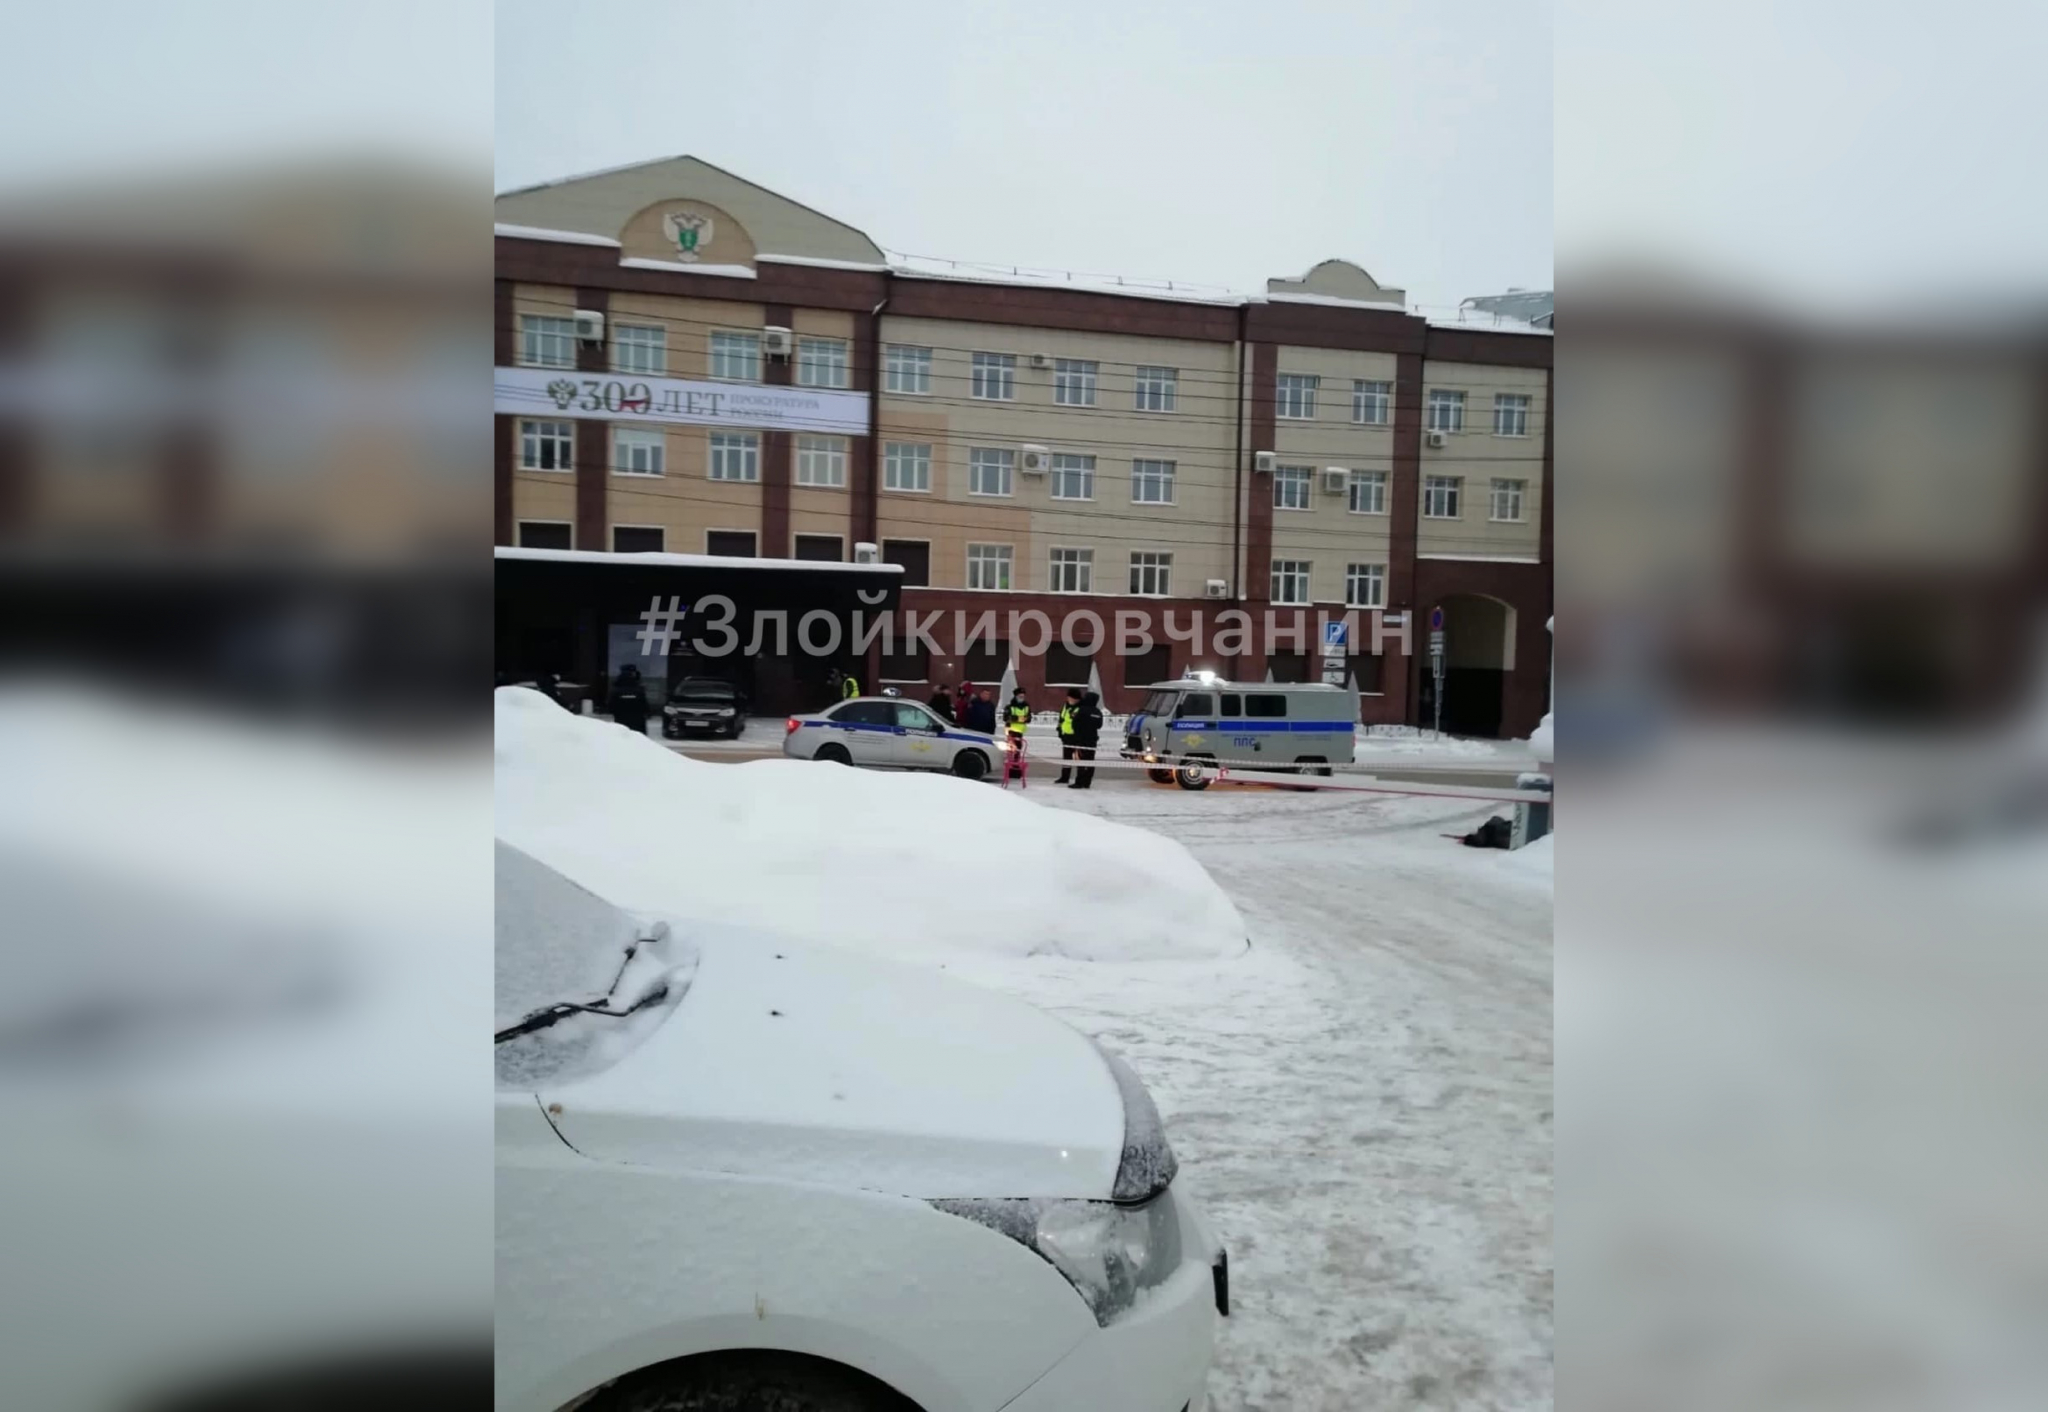 Свидетели: В центре Кирова мужчина открыл стрельбу и застрелился